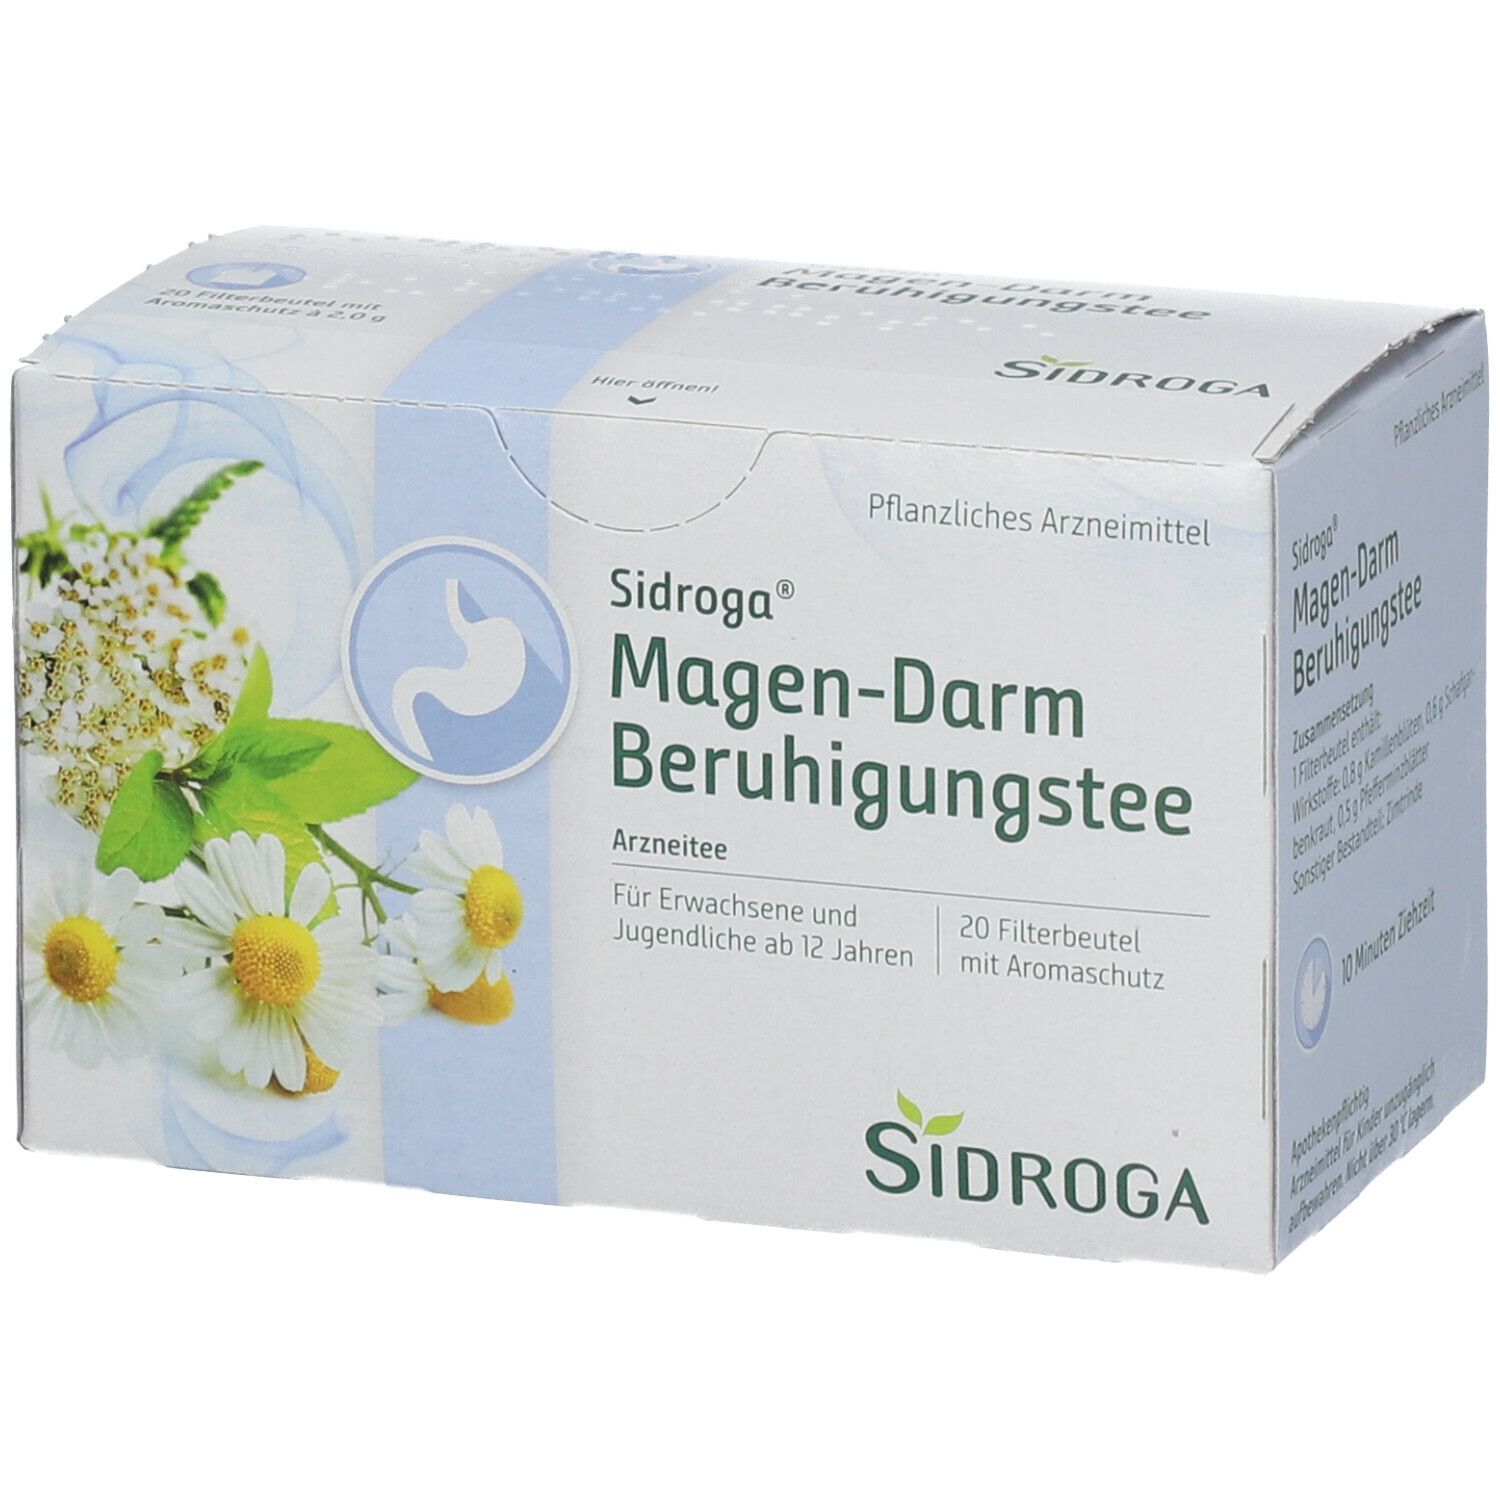 Sidroga® Magen-Darm Beruhigungstee